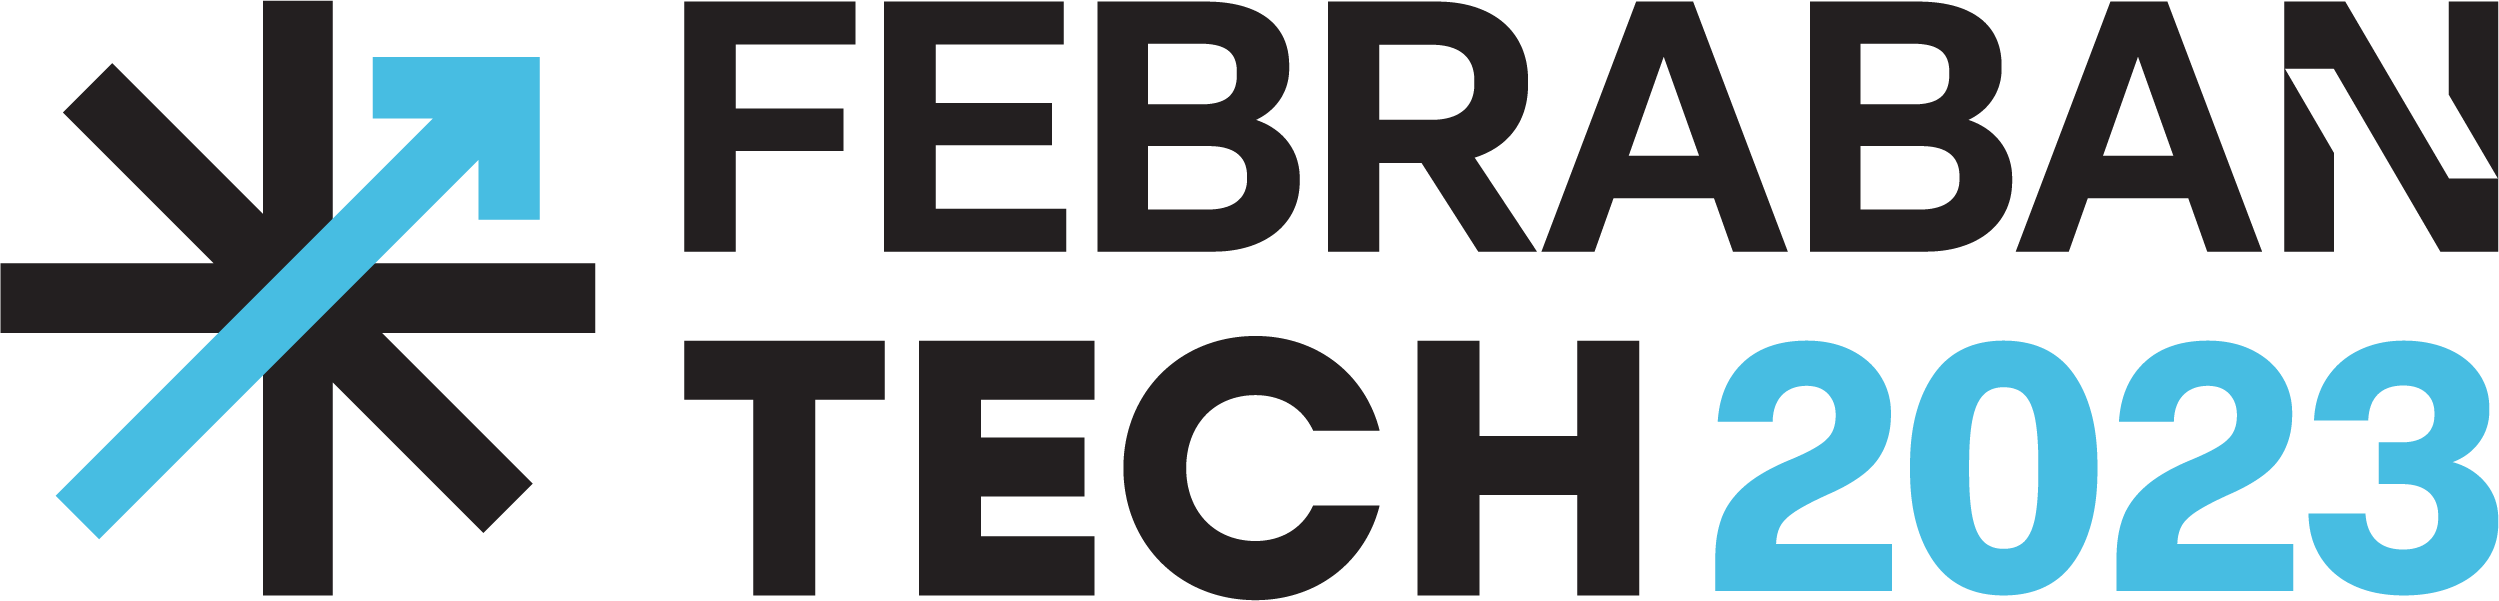 Febraban Tech 2023: está chegando o principal evento de tecnologia e inovação do setor financeiro